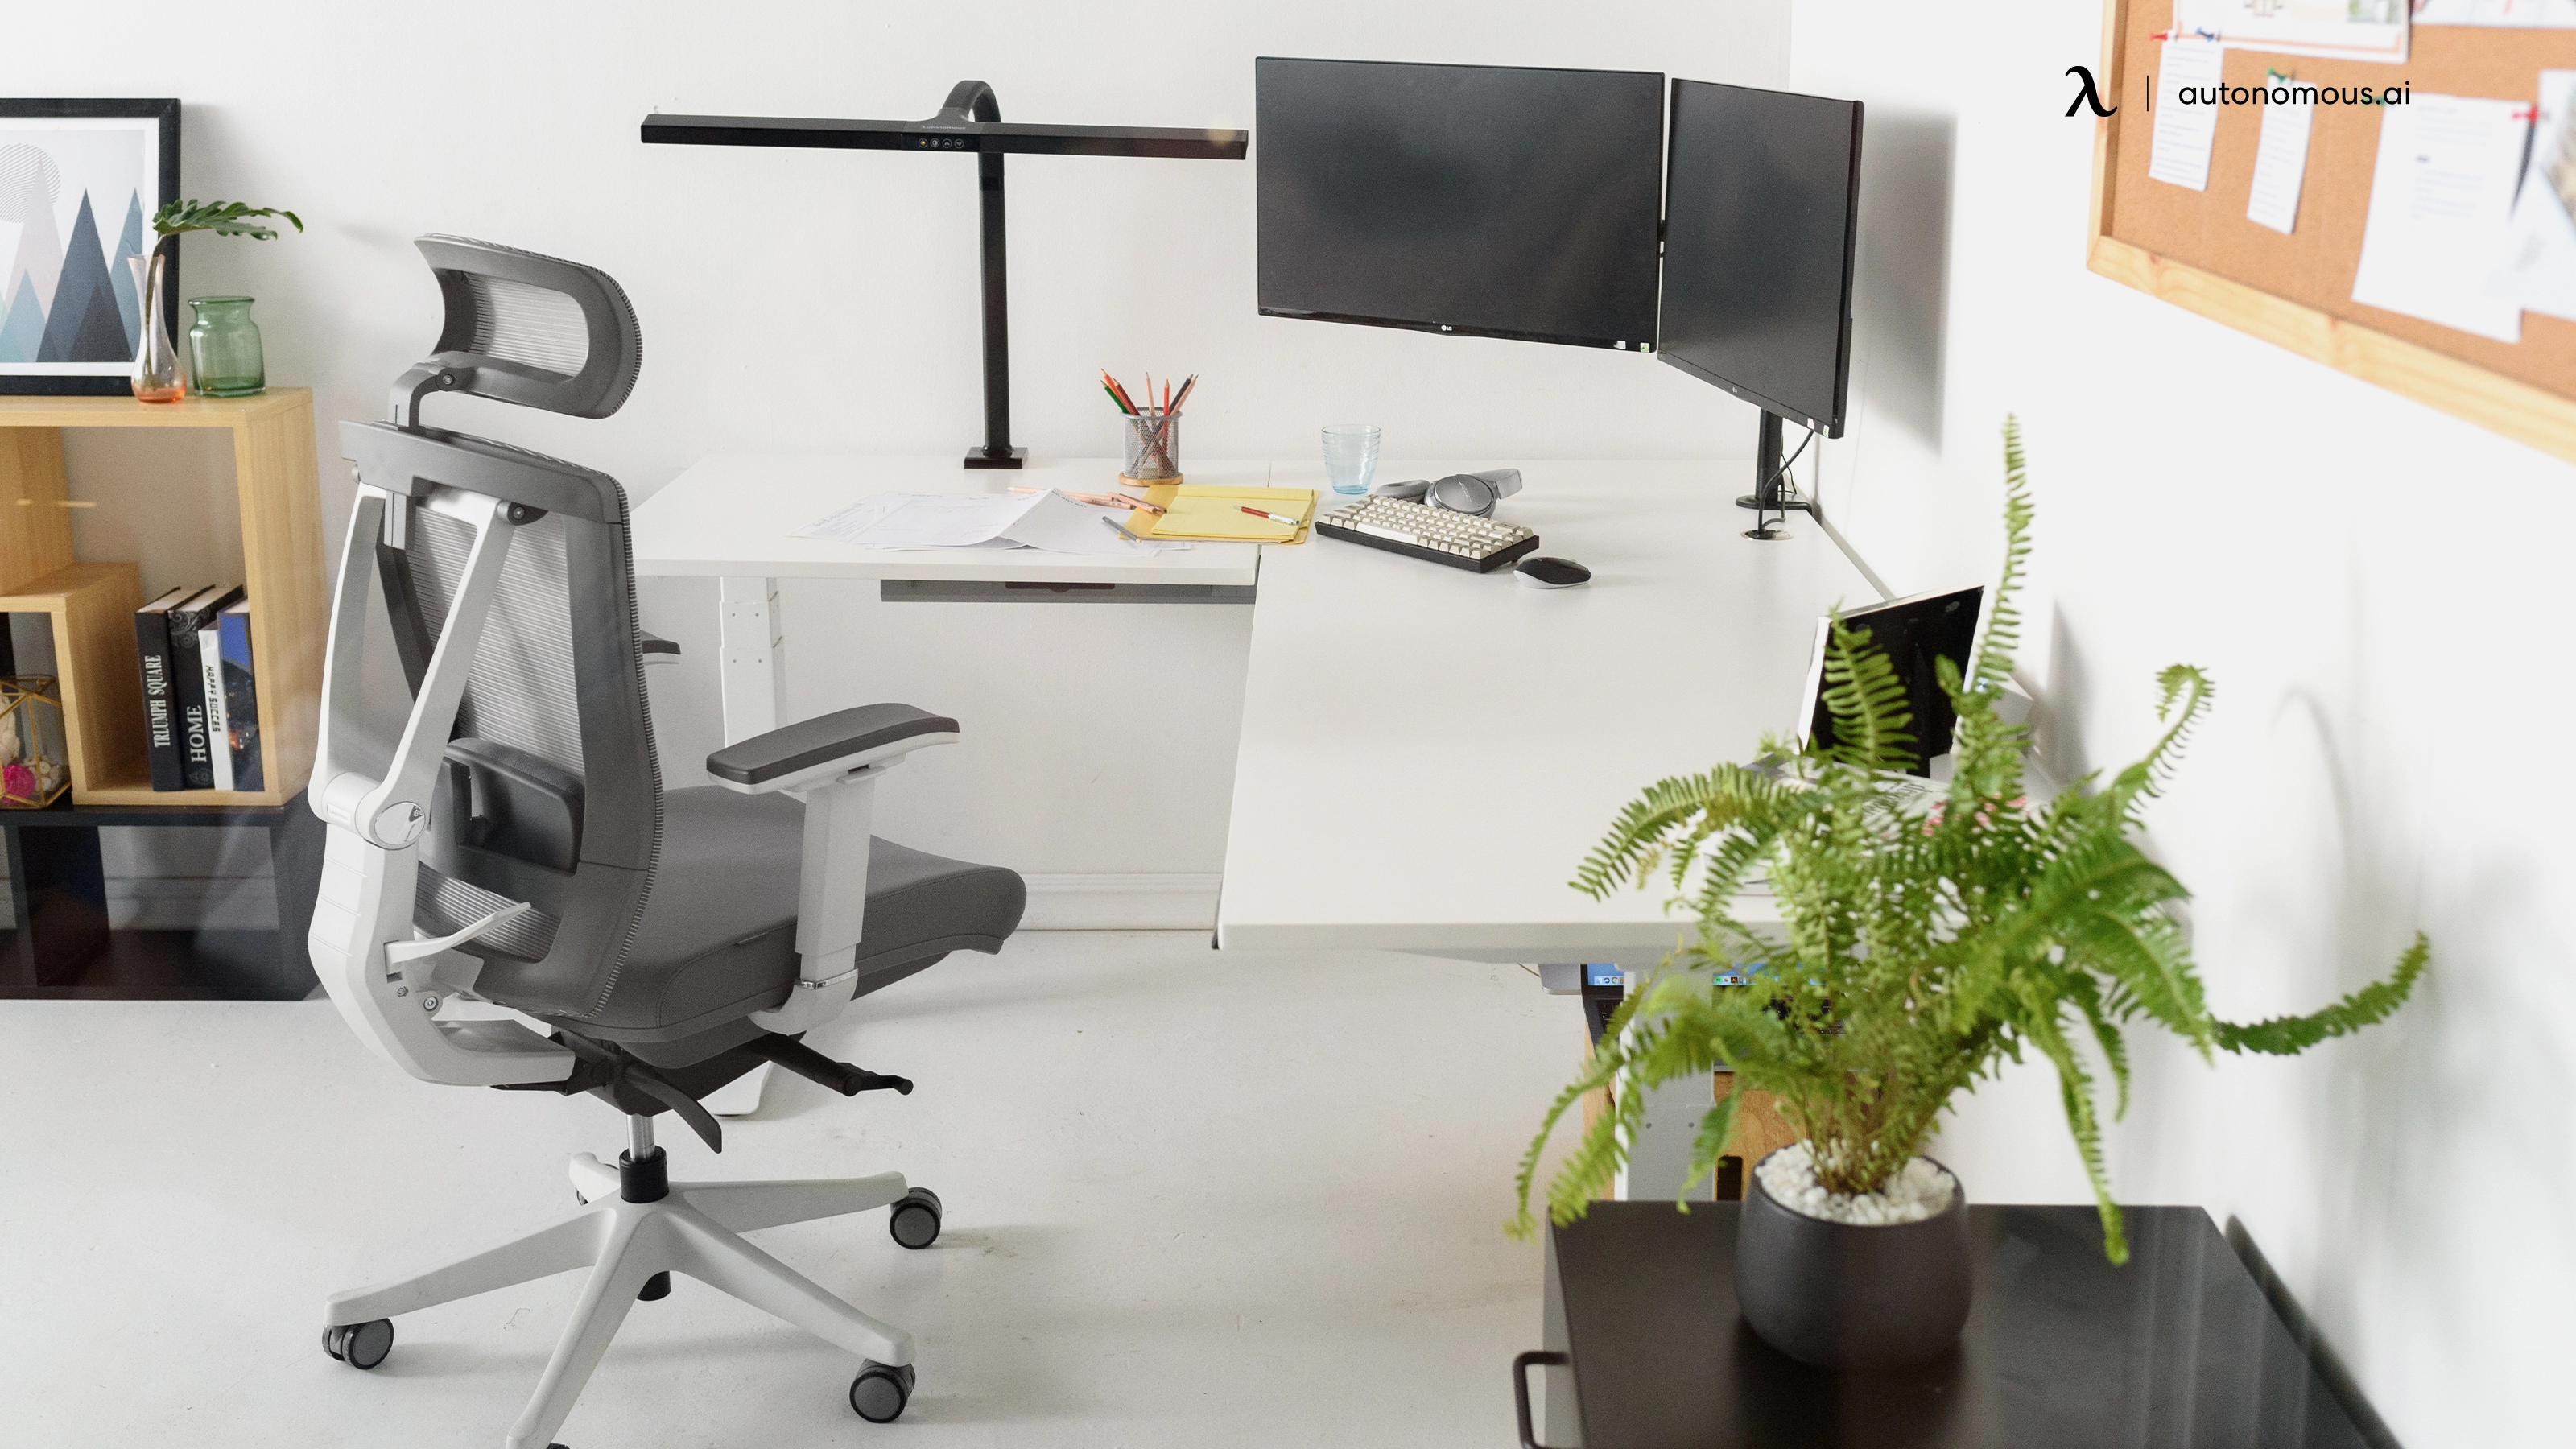 Need a Desk? How About The Autonomous White Corner Desk?